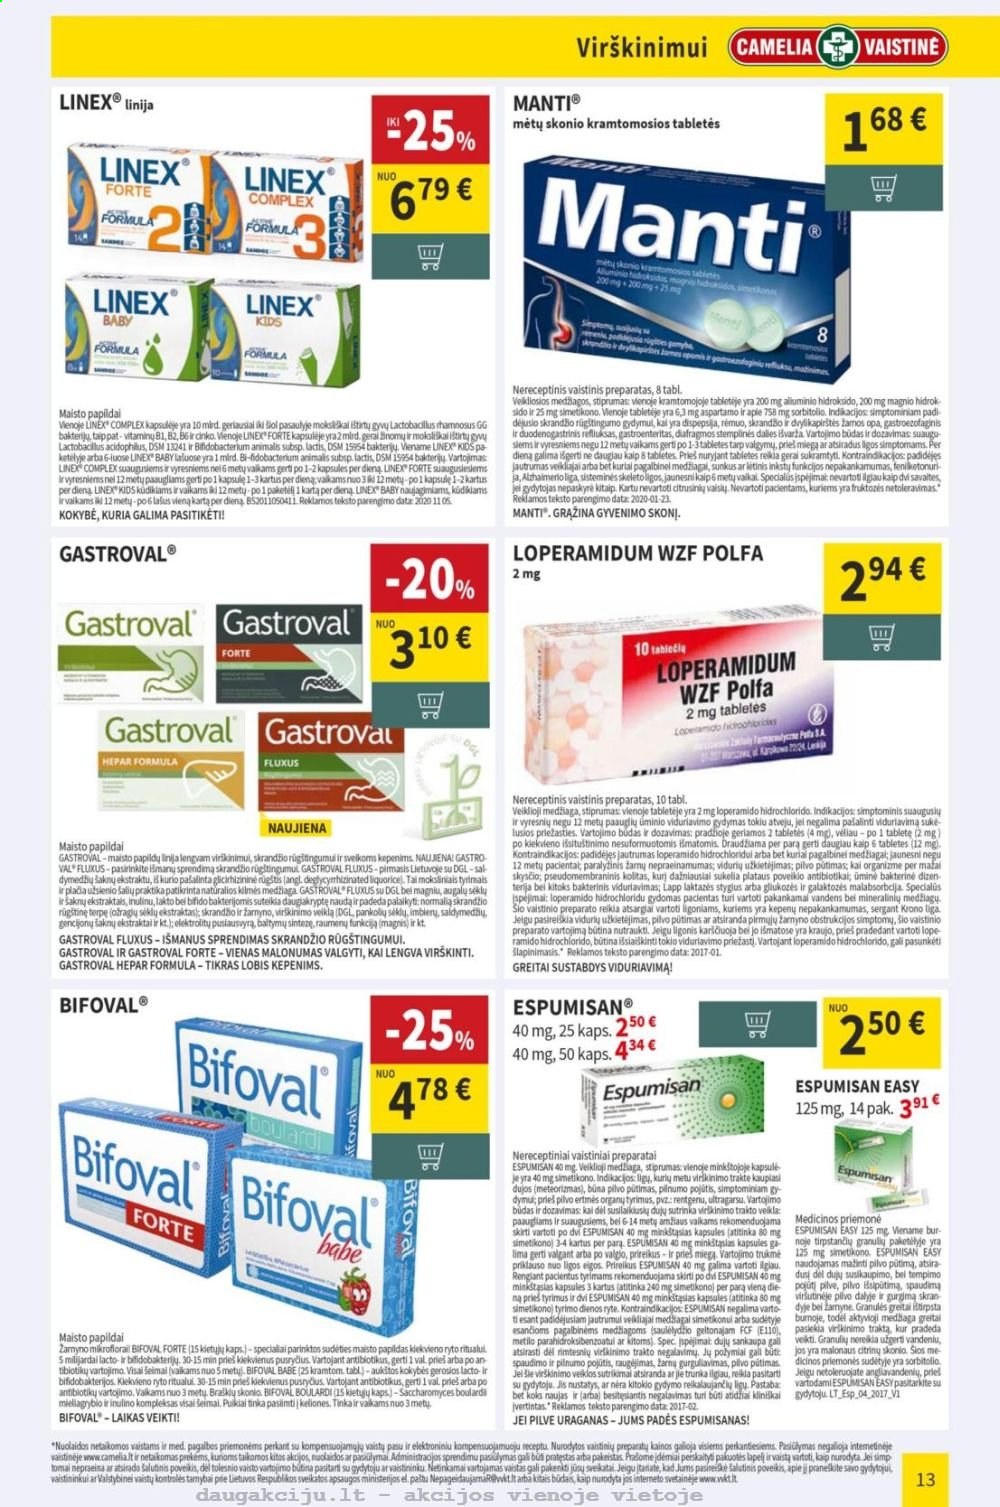 thumbnail - „CAMELIA Vaistinė“ leidinys - 2021 01 04 - 2021 01 31 - Išpardavimų produktai - Bifoval, Loperamidum WZF Polfa, Magnis, maisto papildai. 13 puslapis.